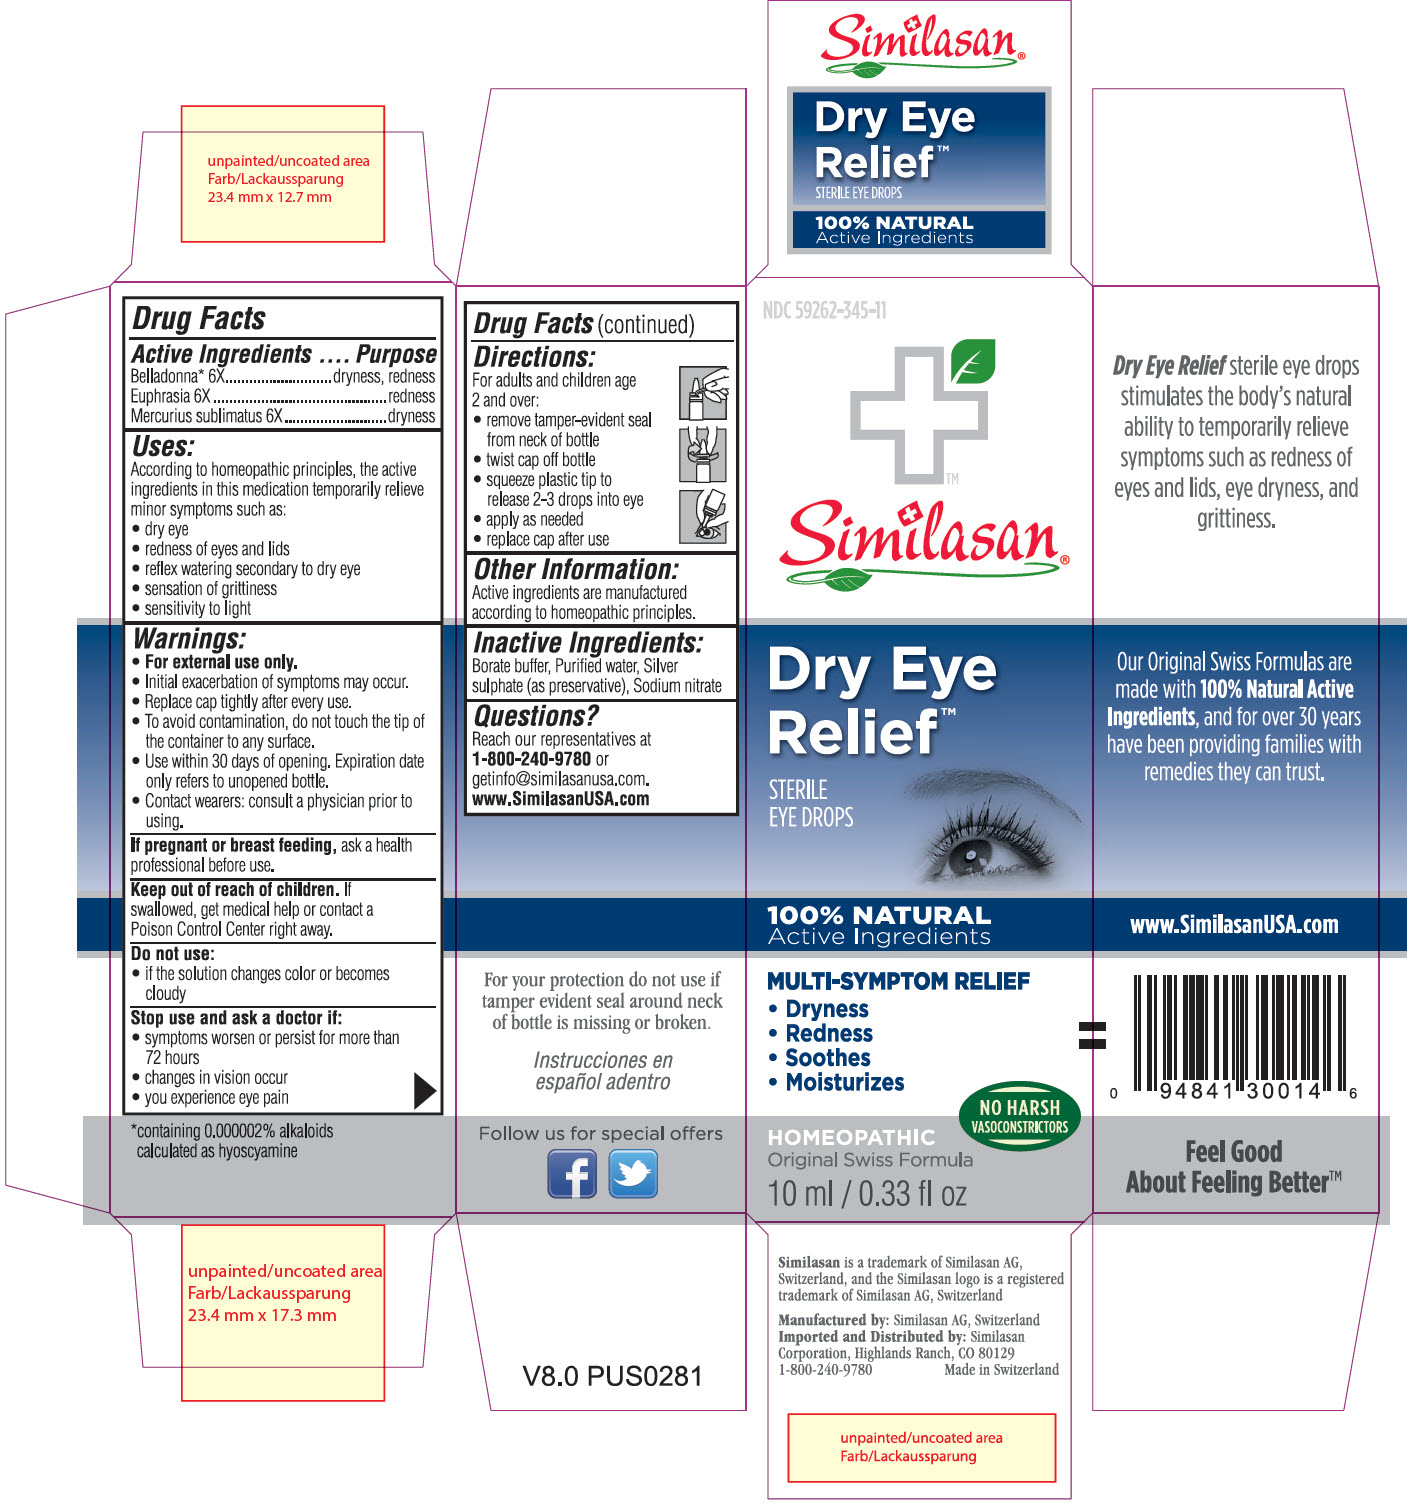 NDC 59262-345-11 Similasan Dry Eye Relief Sterile Eye Drops 10 ml / 0.33 fl oz